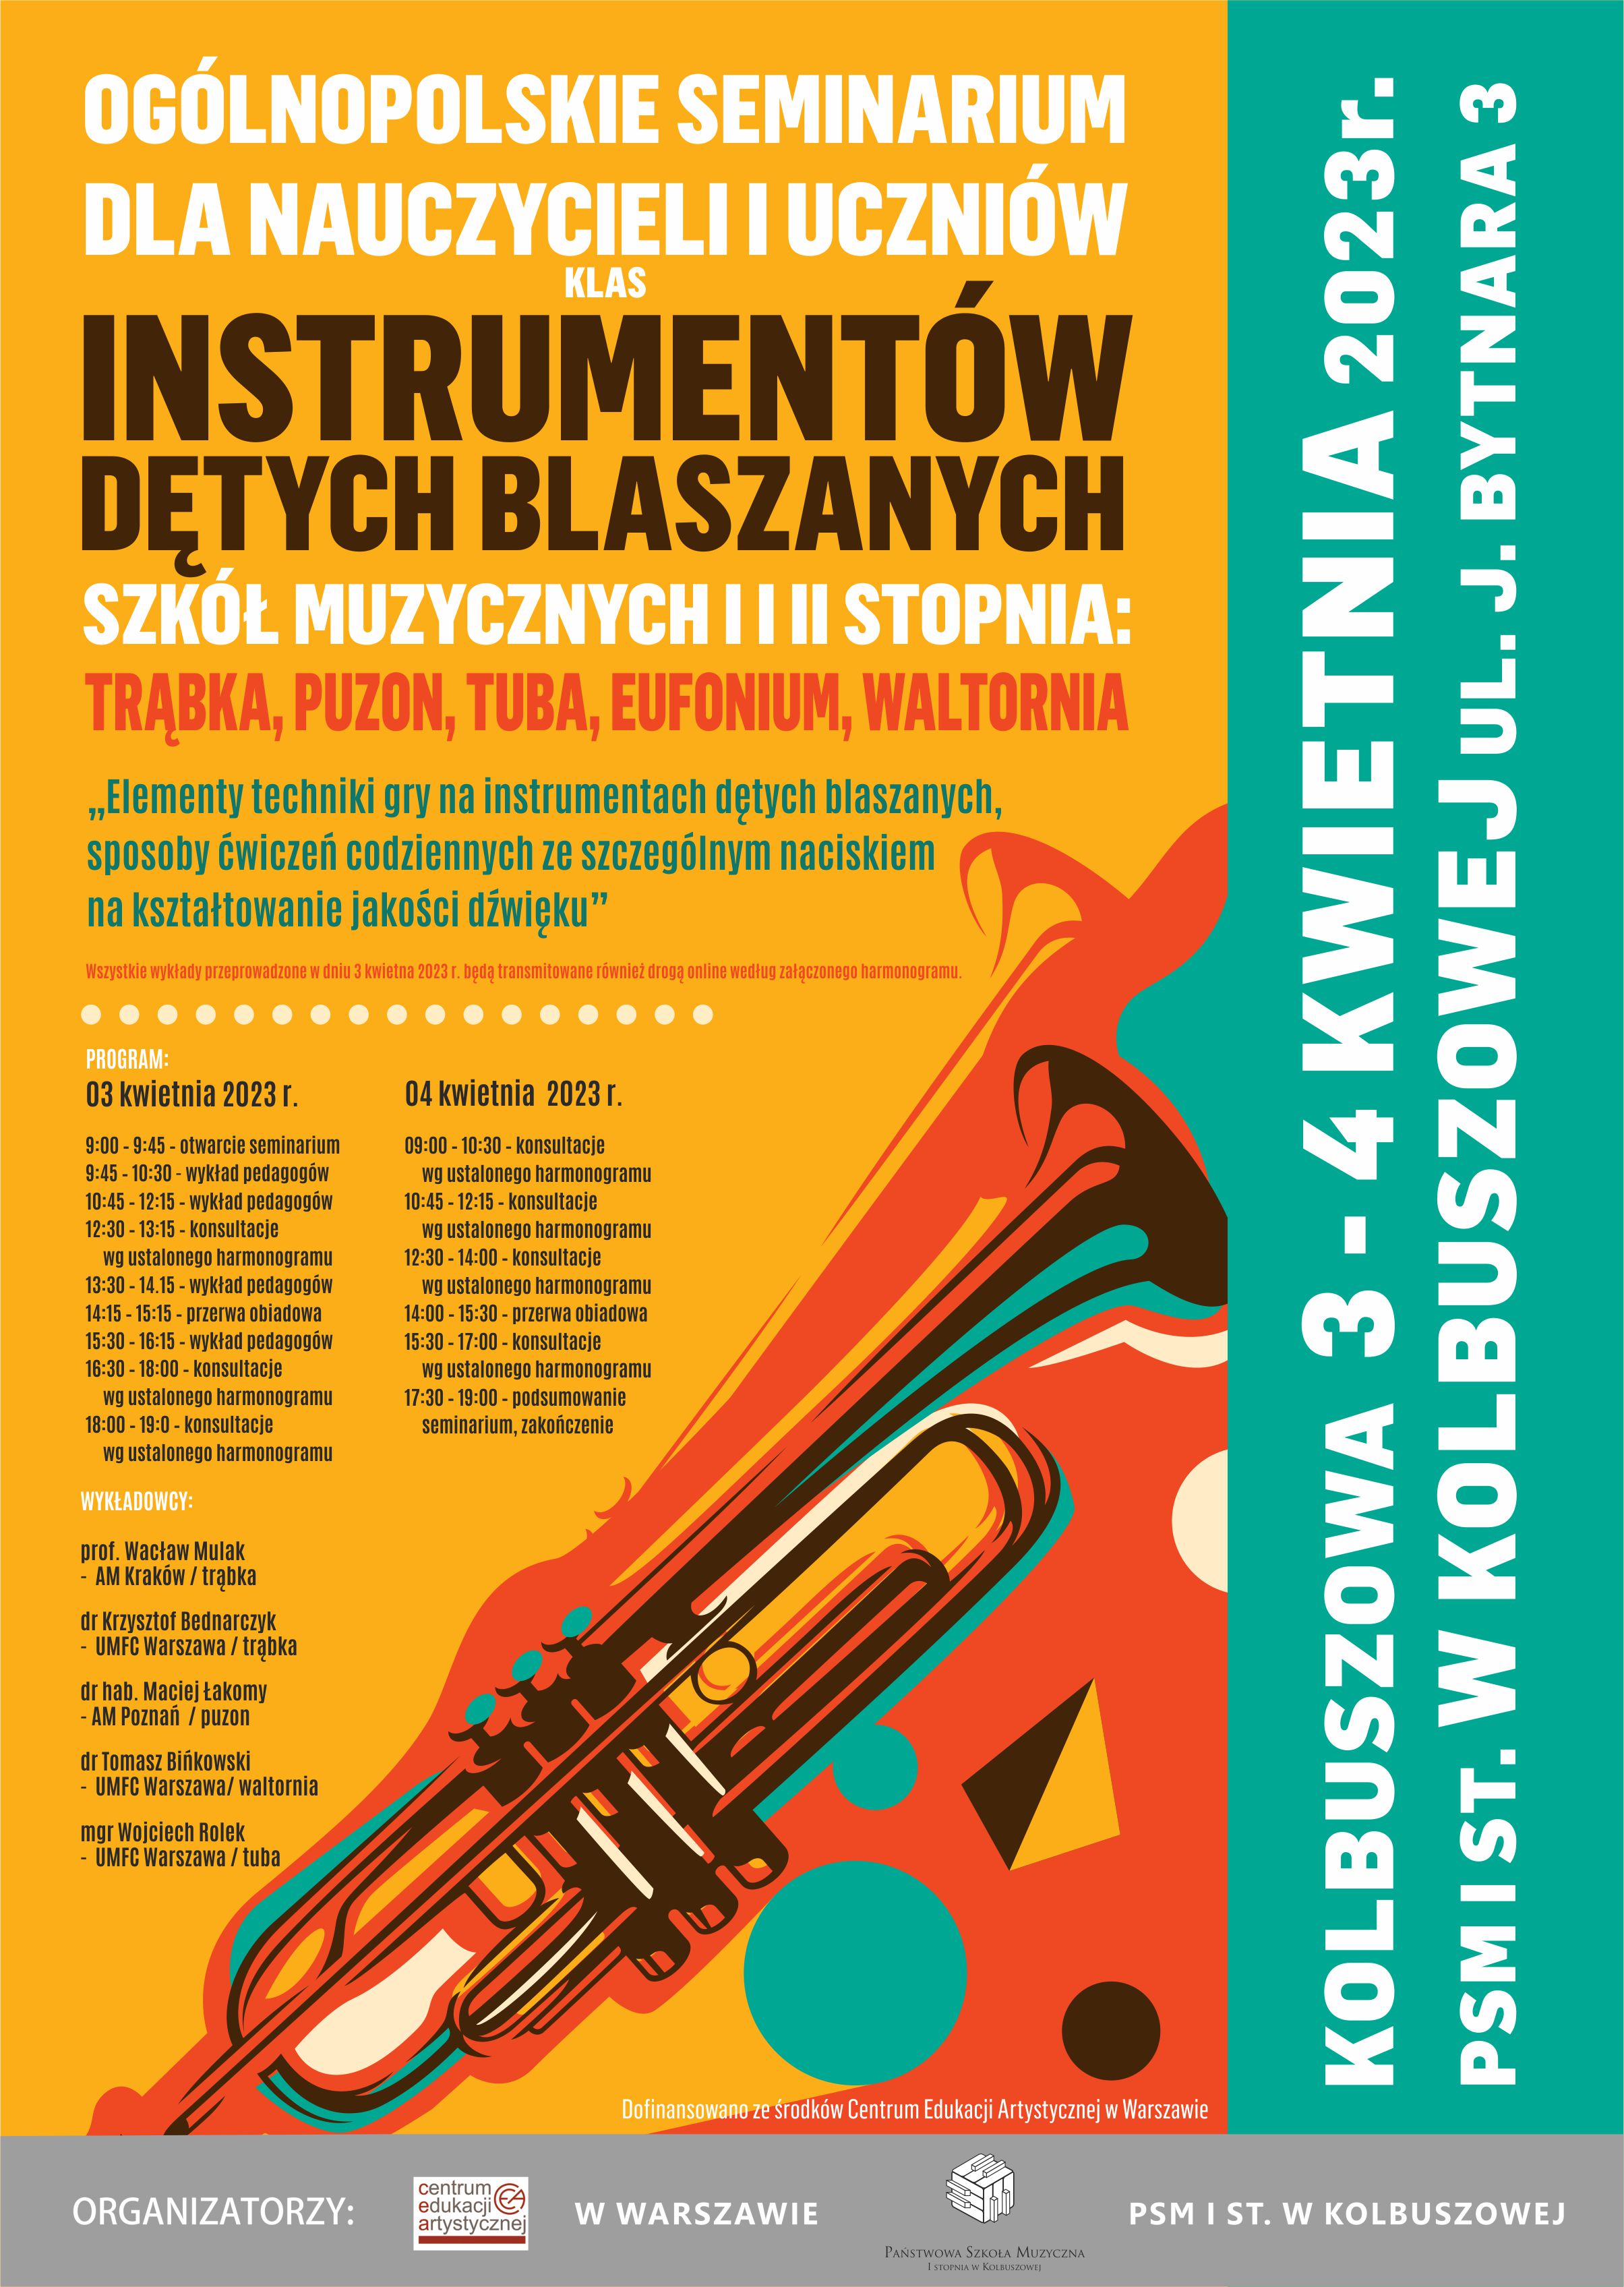 Ogólnopolskie Seminarium Instrumentów Dętych Blaszanych